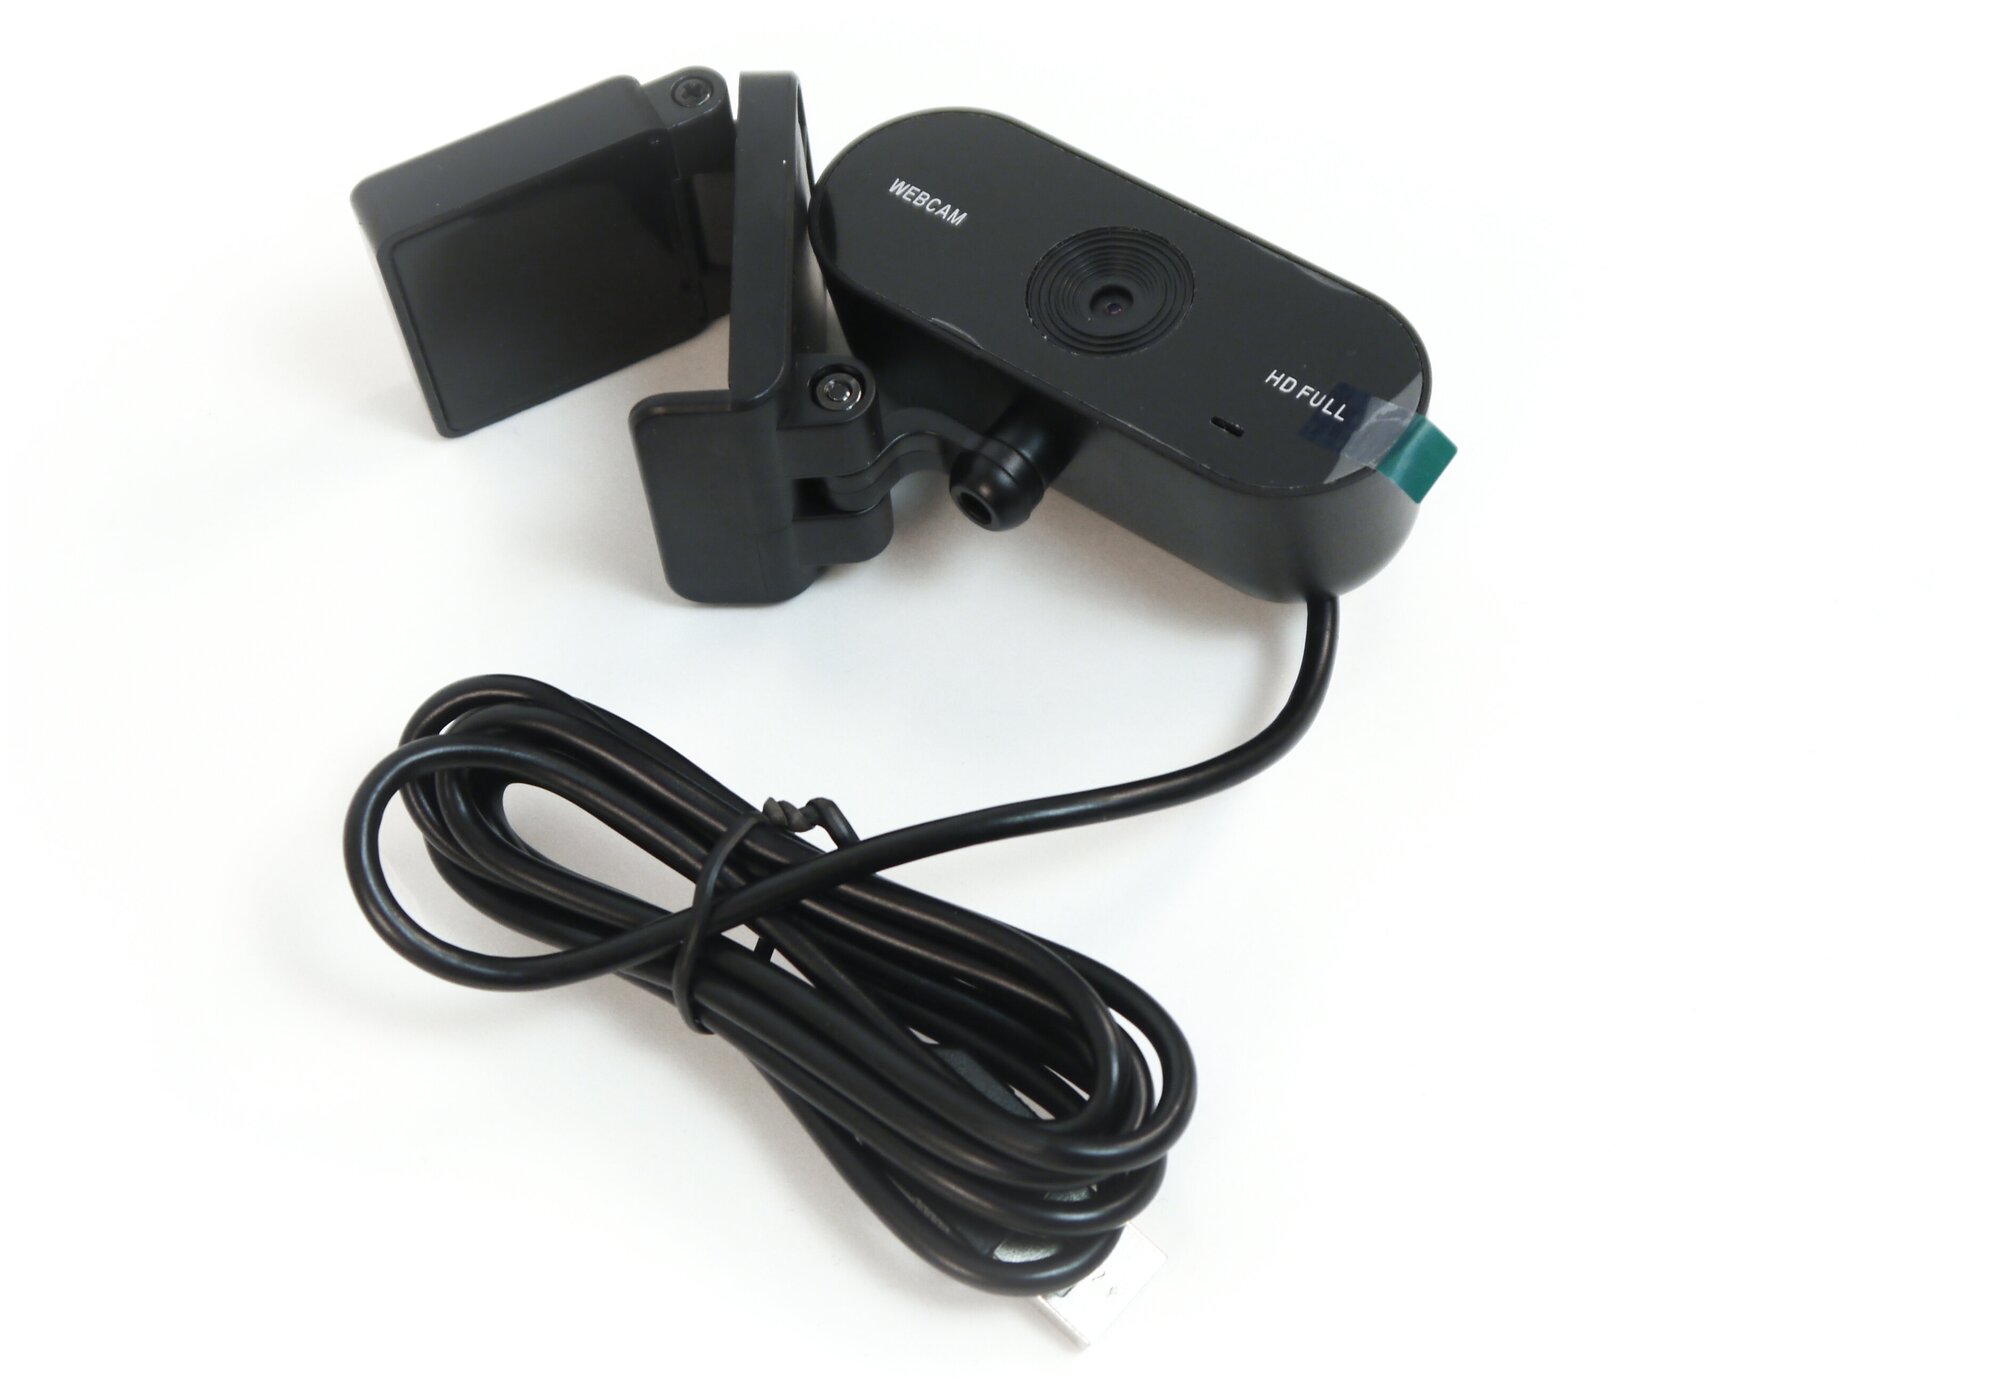 Web камера FullHD HDcom Zoom W15-FHD - камера для компьютера онлайн / камера для конференций. Full HD - 1920x1080 в подарочной упаковке